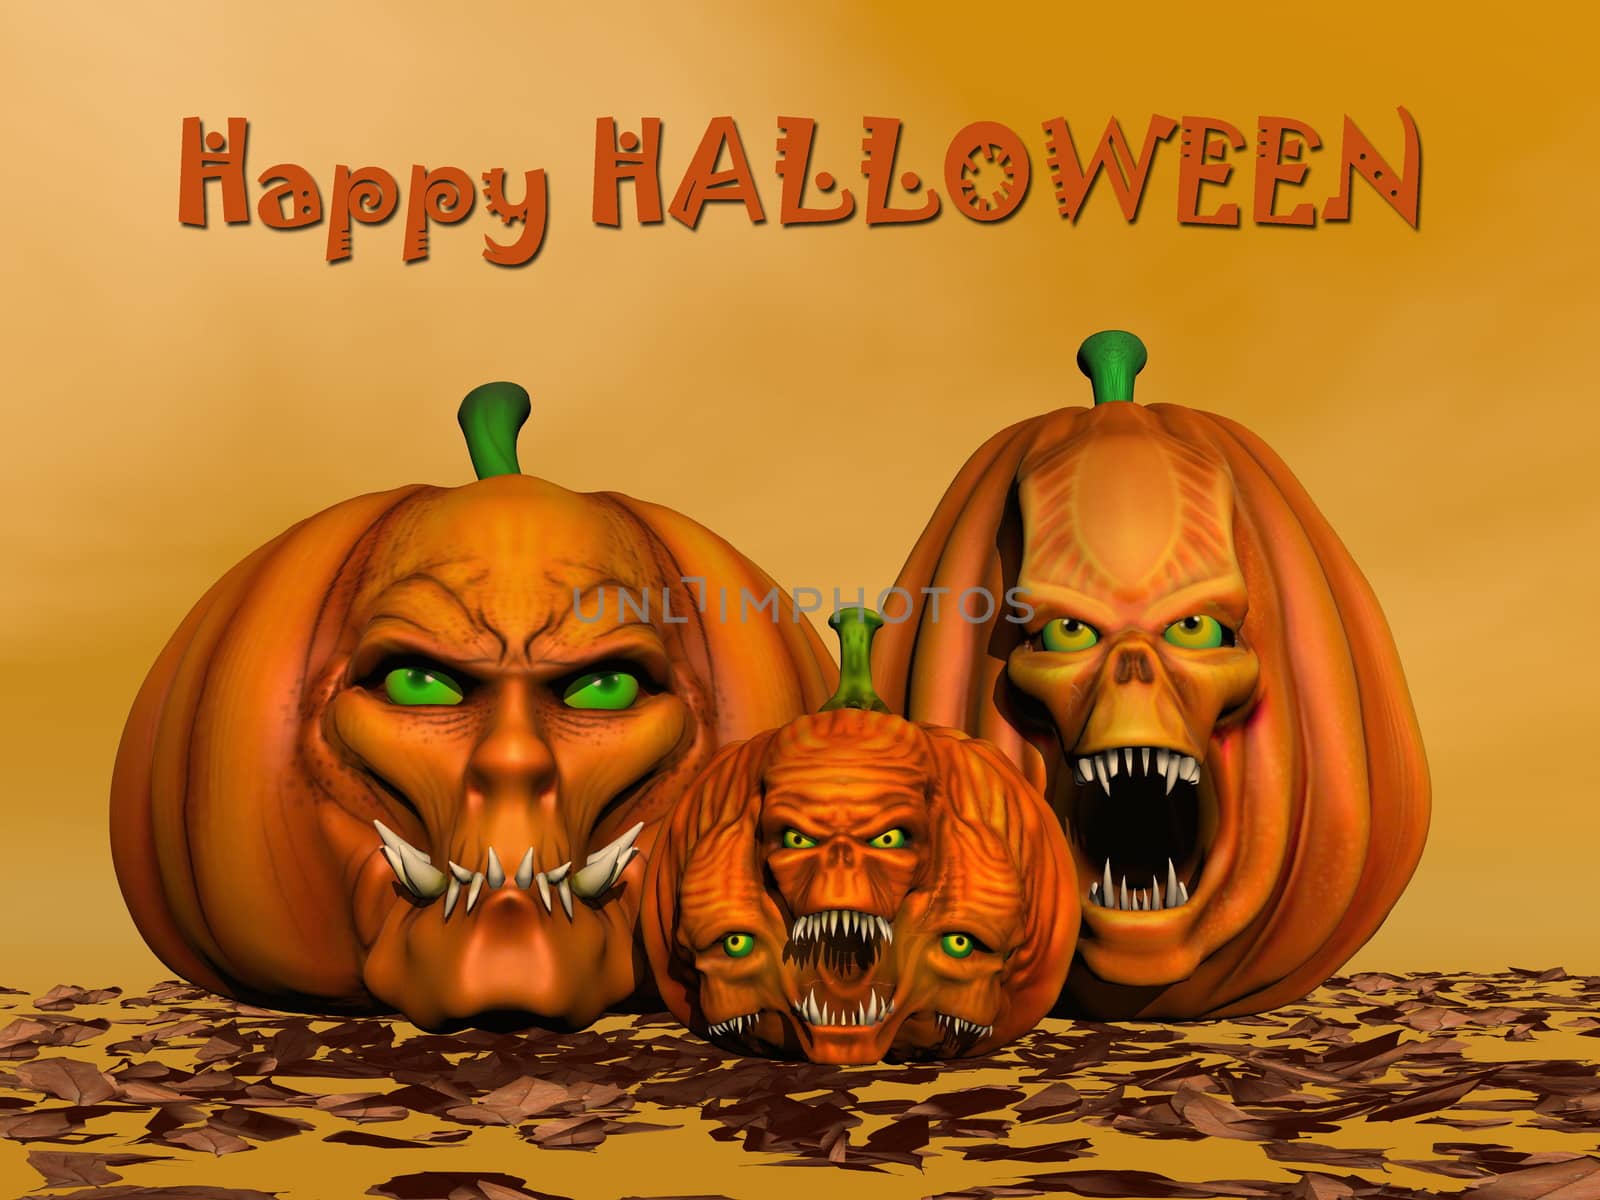 Happy halloween pumpkins - 3D render by Elenaphotos21